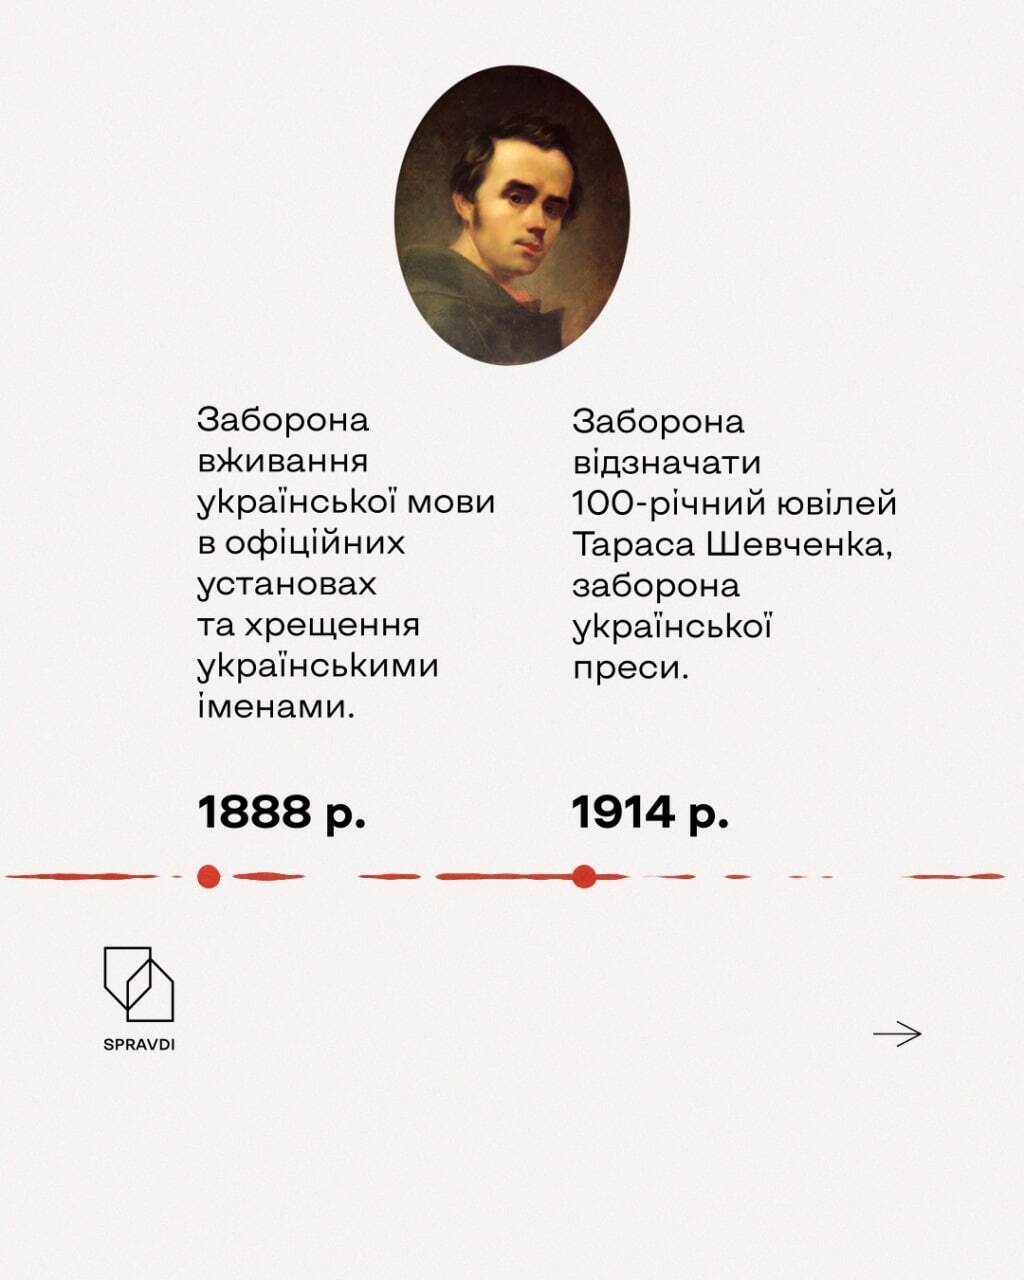 Українцям забороняли відзначати 100-річний ювілей Шевченка